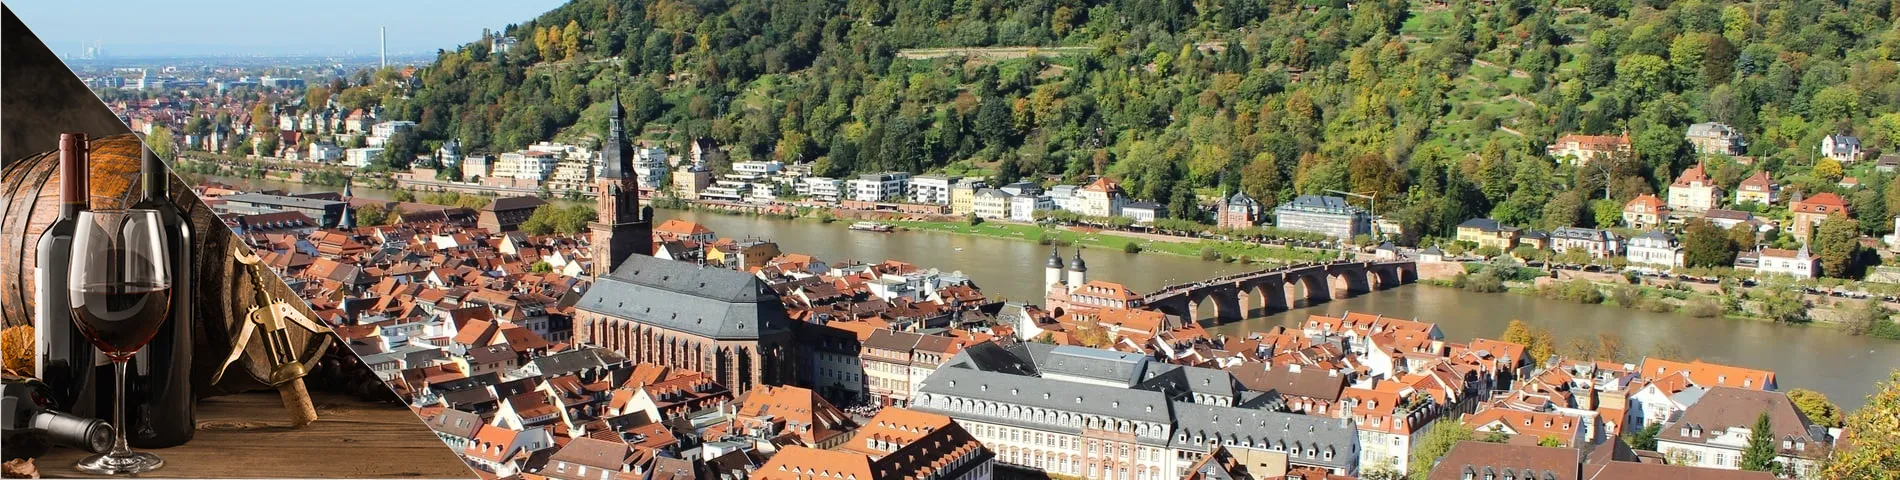 Heidelberg - Tyska & oenologi